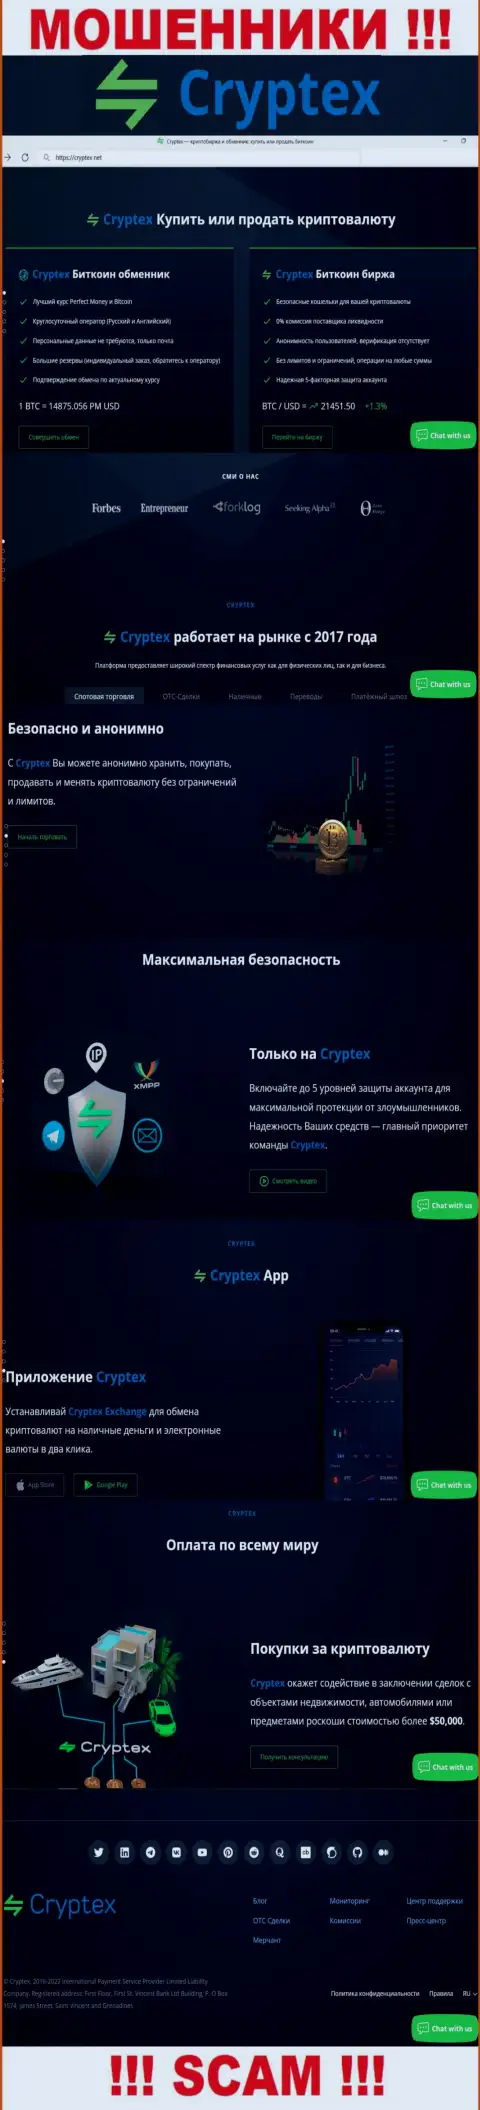 Скрин официального сайта мошеннической организации Криптех Нет